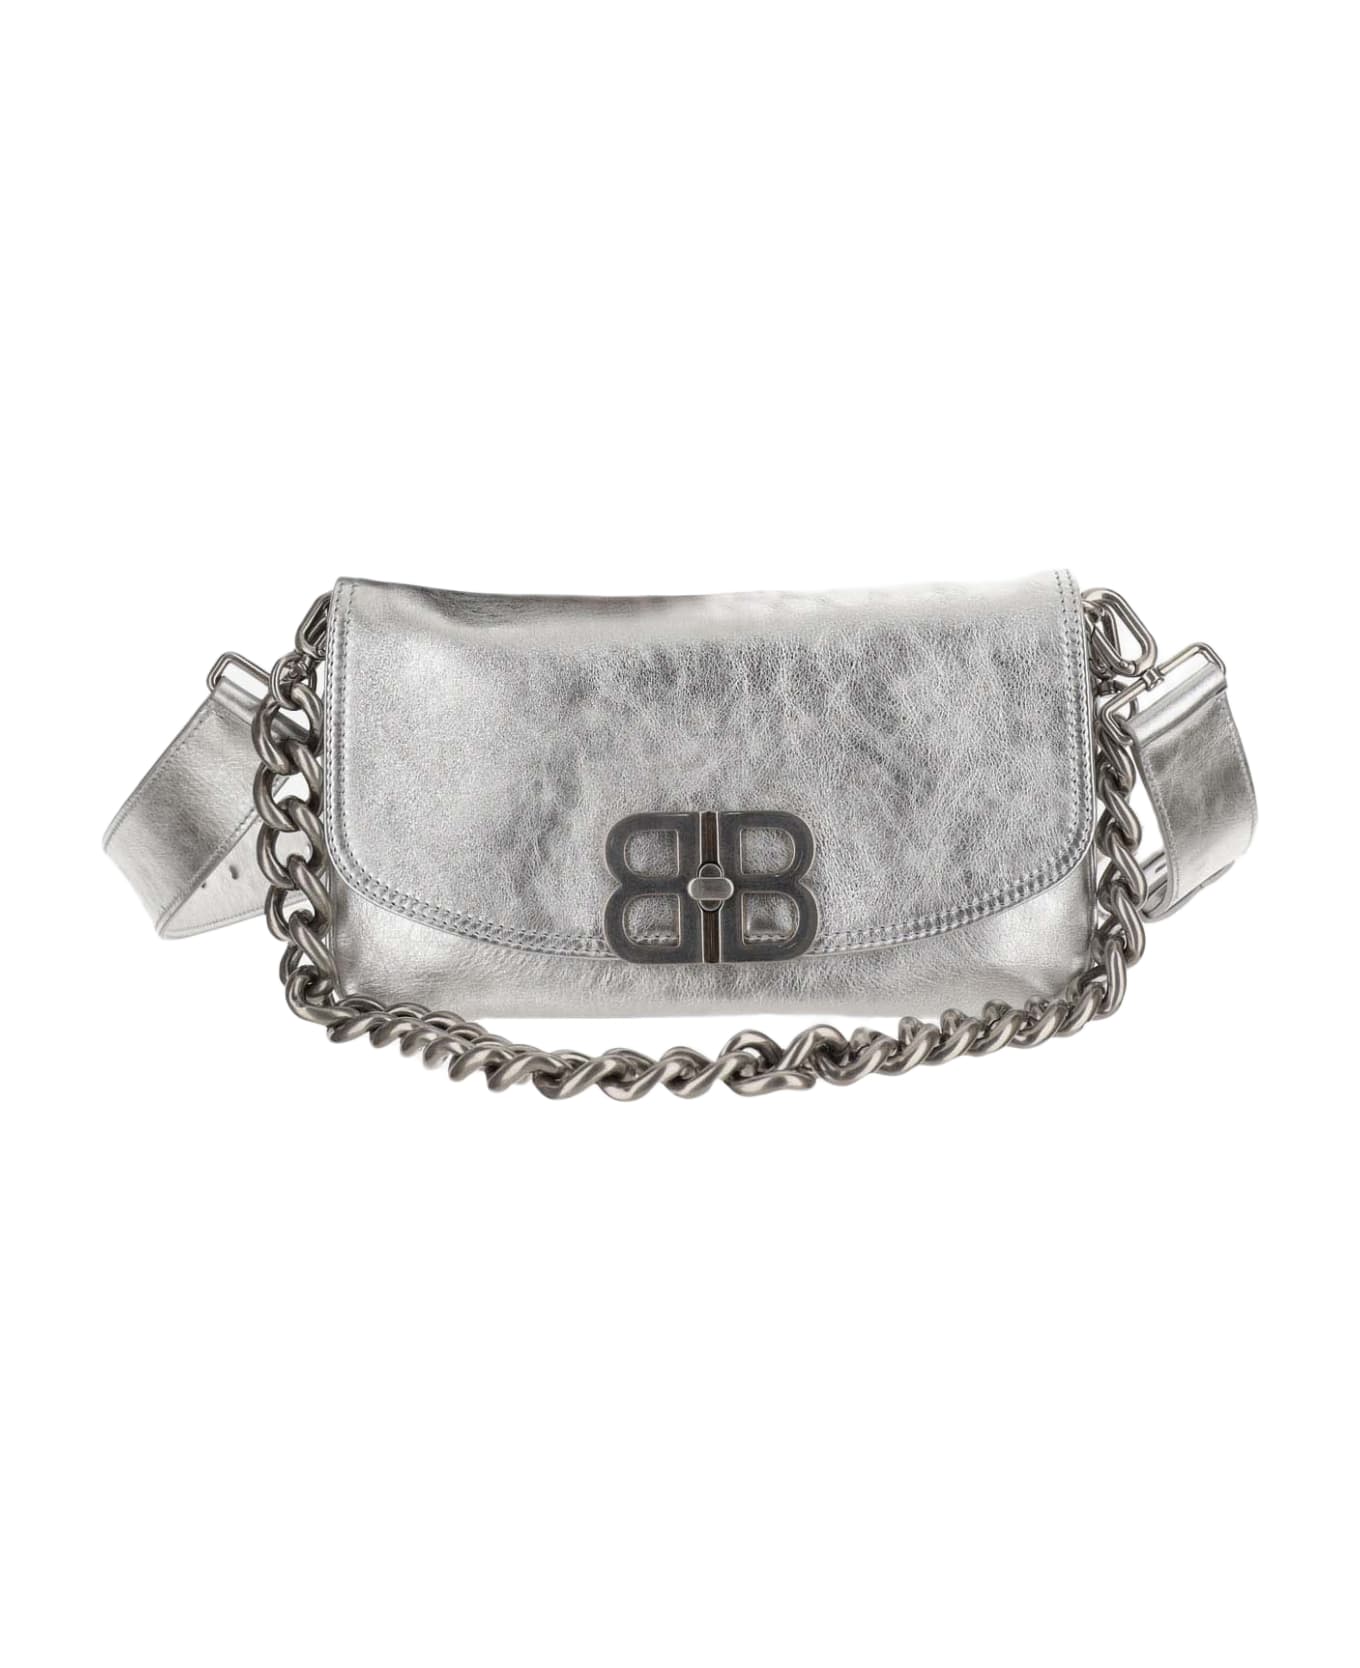 Balenciaga Flap Bag Bb Soft Small Metallic Silver - Silver